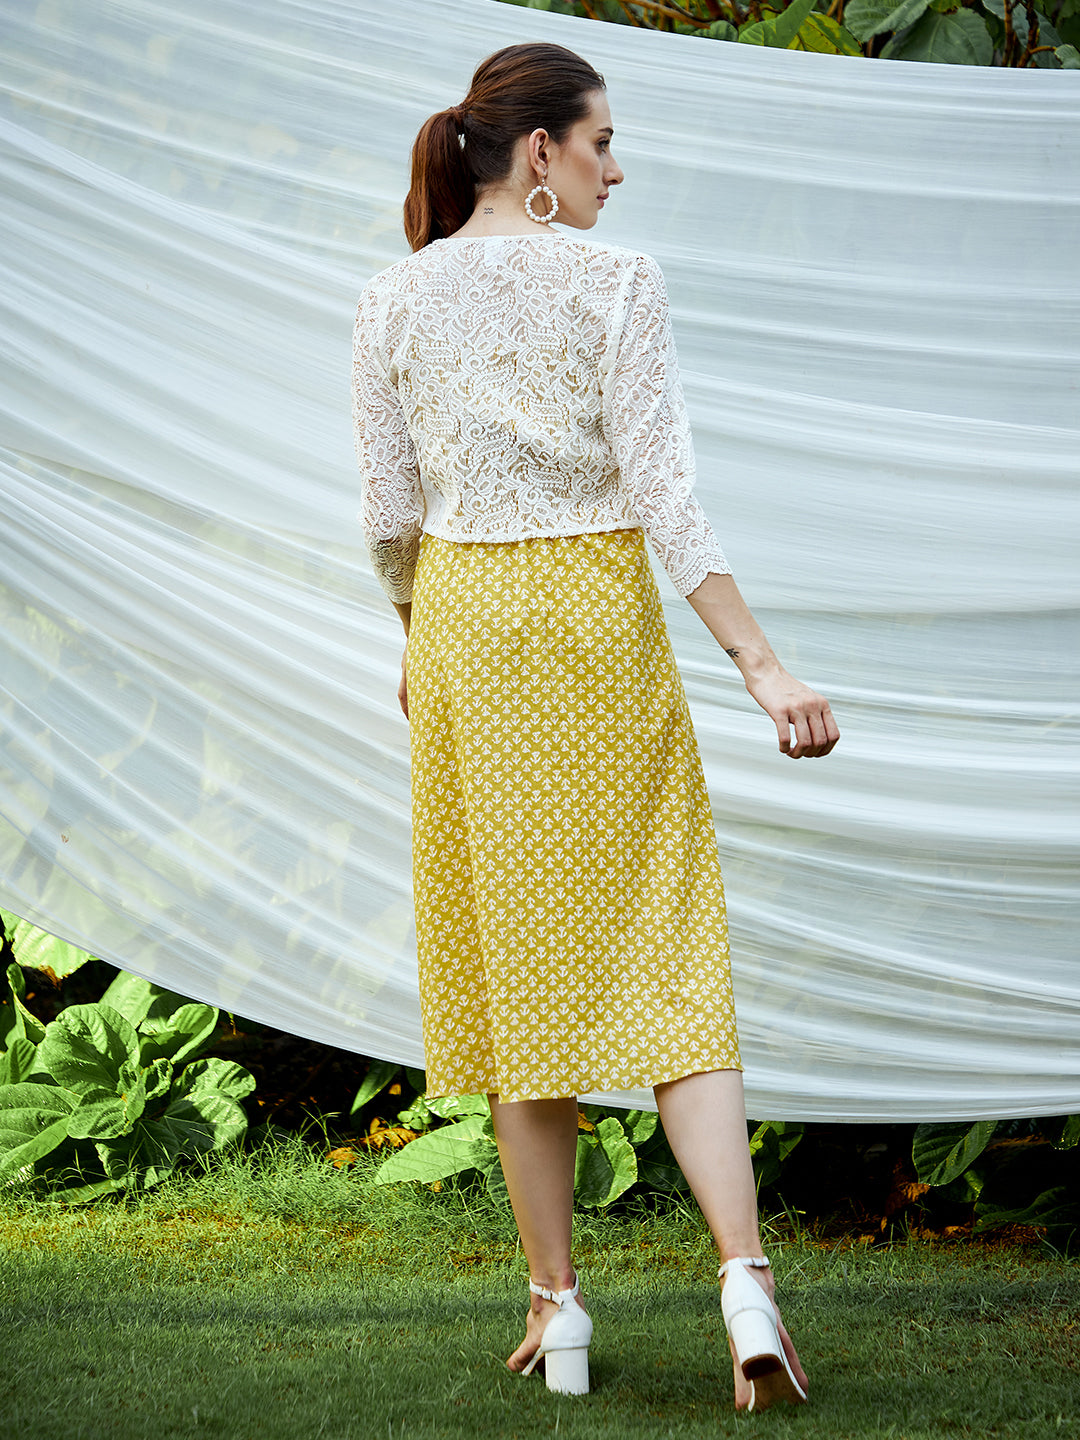 Athena Yellow & White Floral Midi Dress With Lace Jacket - Athena Lifestyle